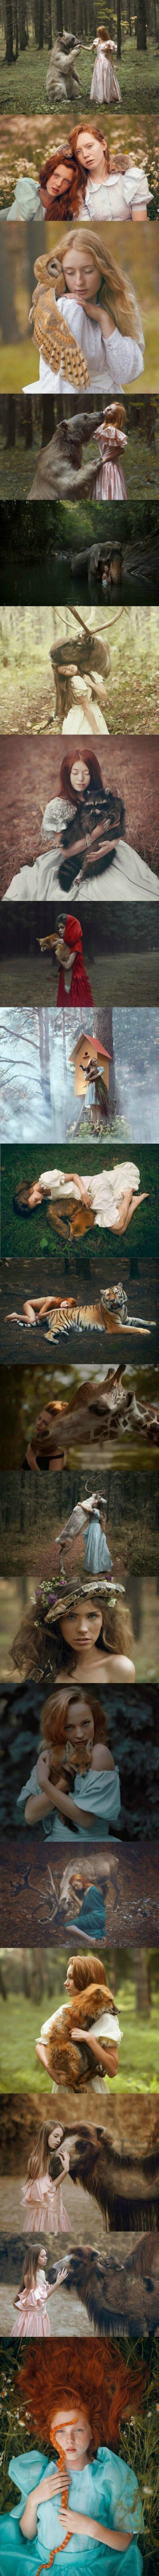 这组图片是一位来自俄罗斯的摄影师拍摄的。被拍摄的动物都是真的，在照片中显得既自然又唯美，好像真的和人能够沟通一样，可想而知拍摄过程有多艰辛